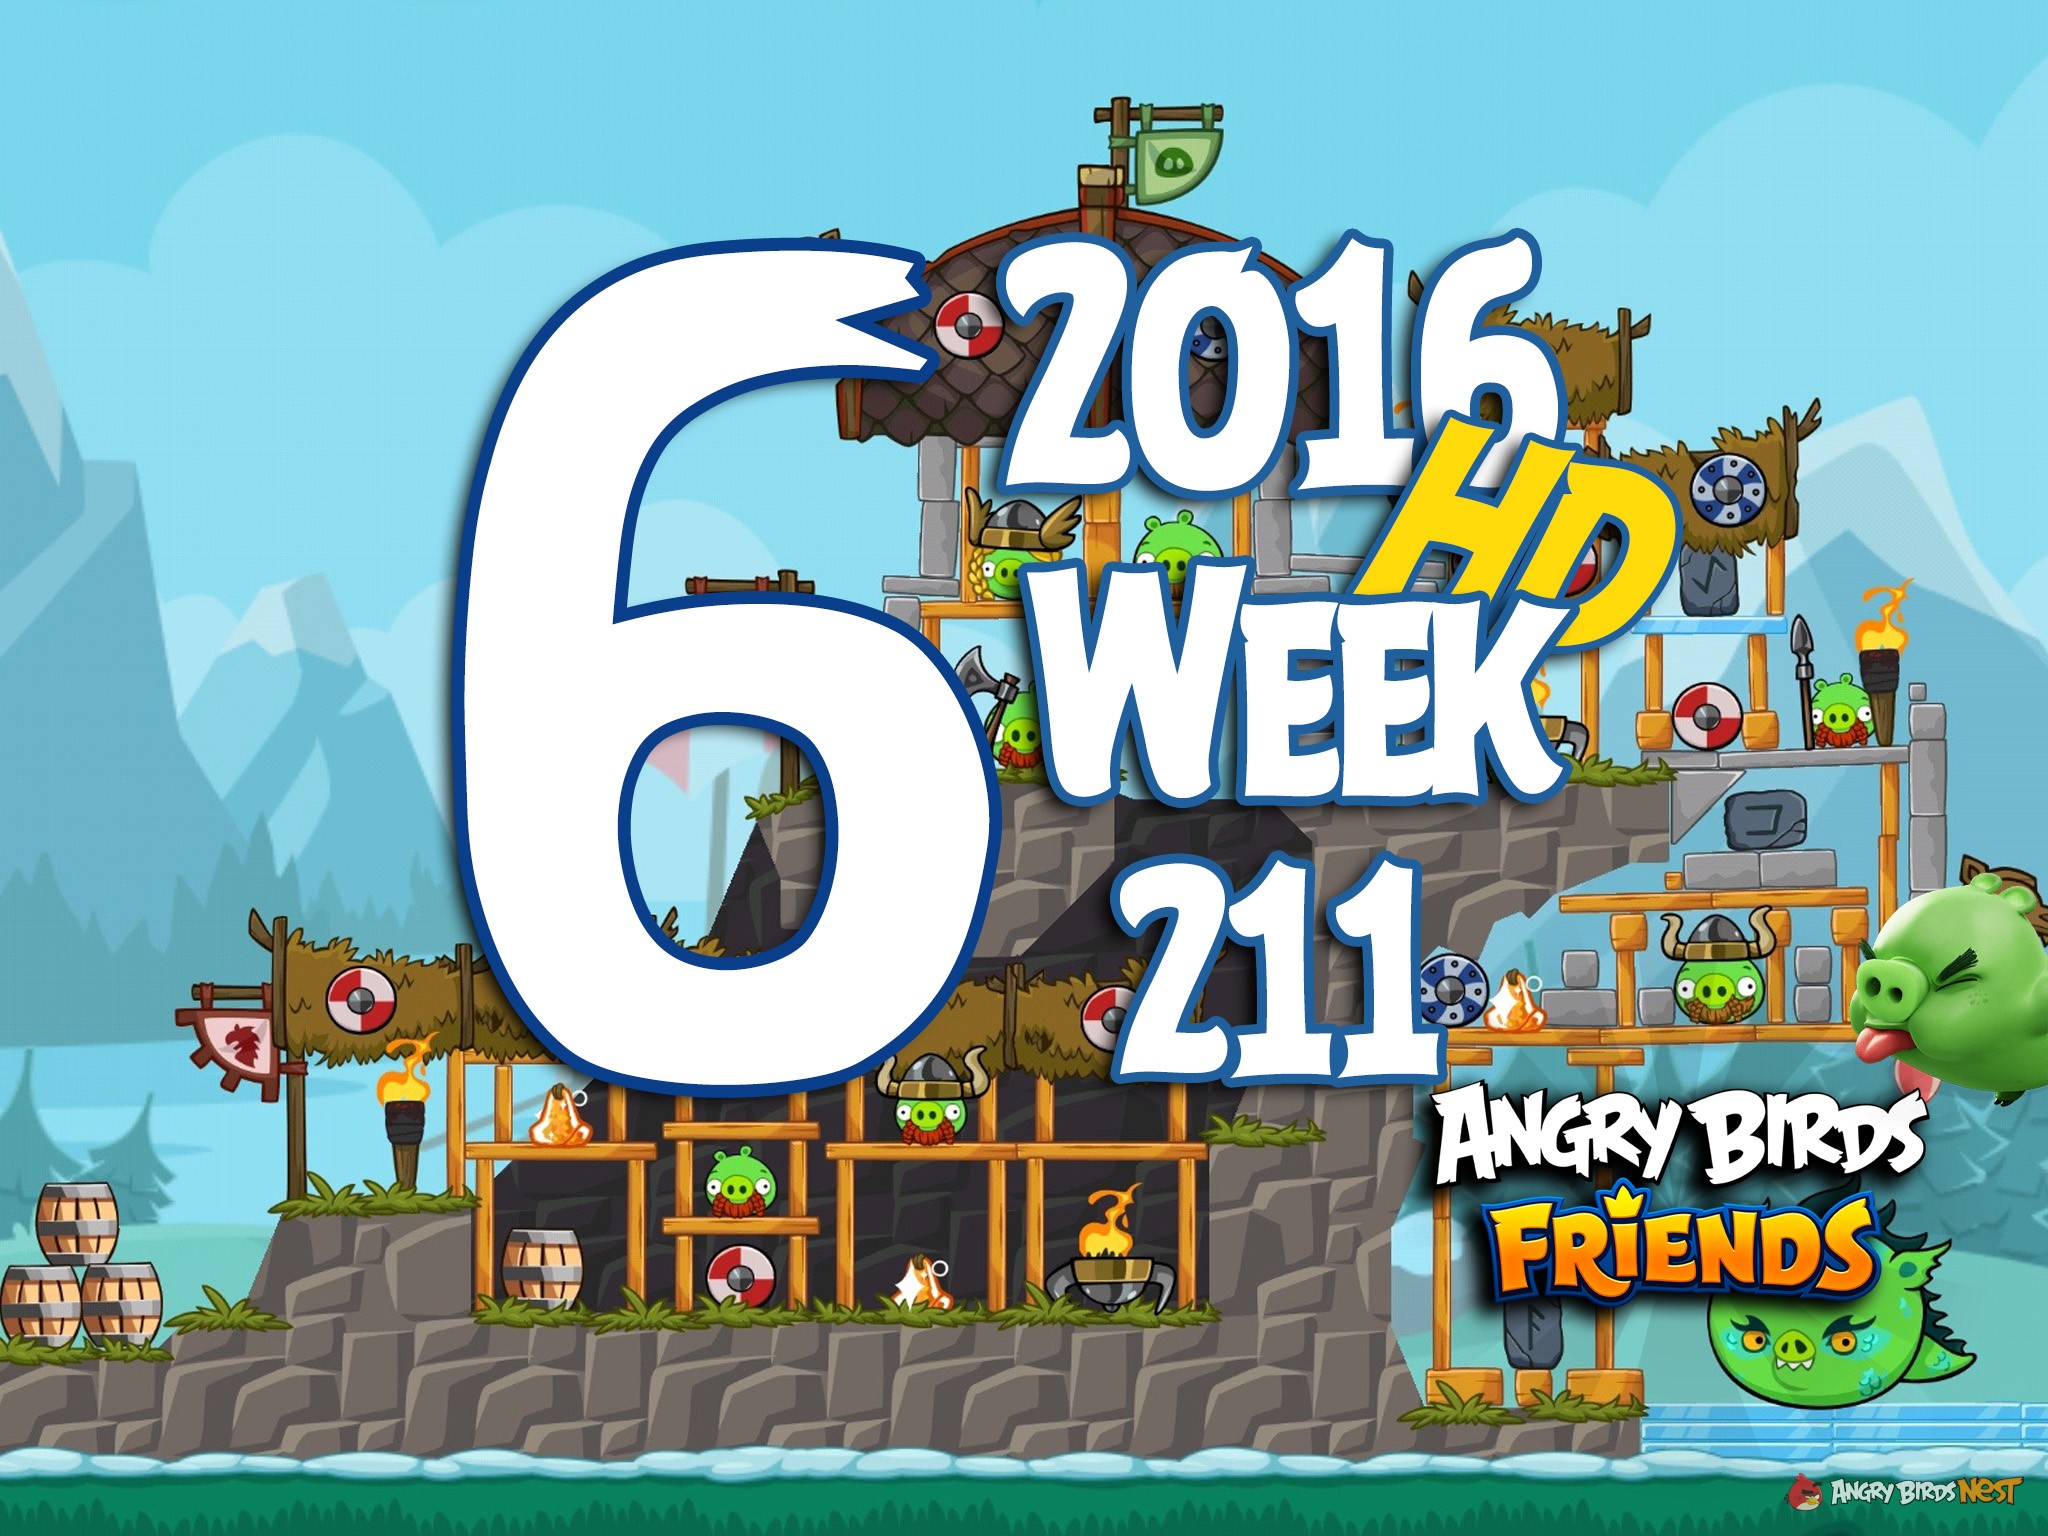 Angry Birds Friends Tournament Level 6 Week 211 Walkthrough | 2016